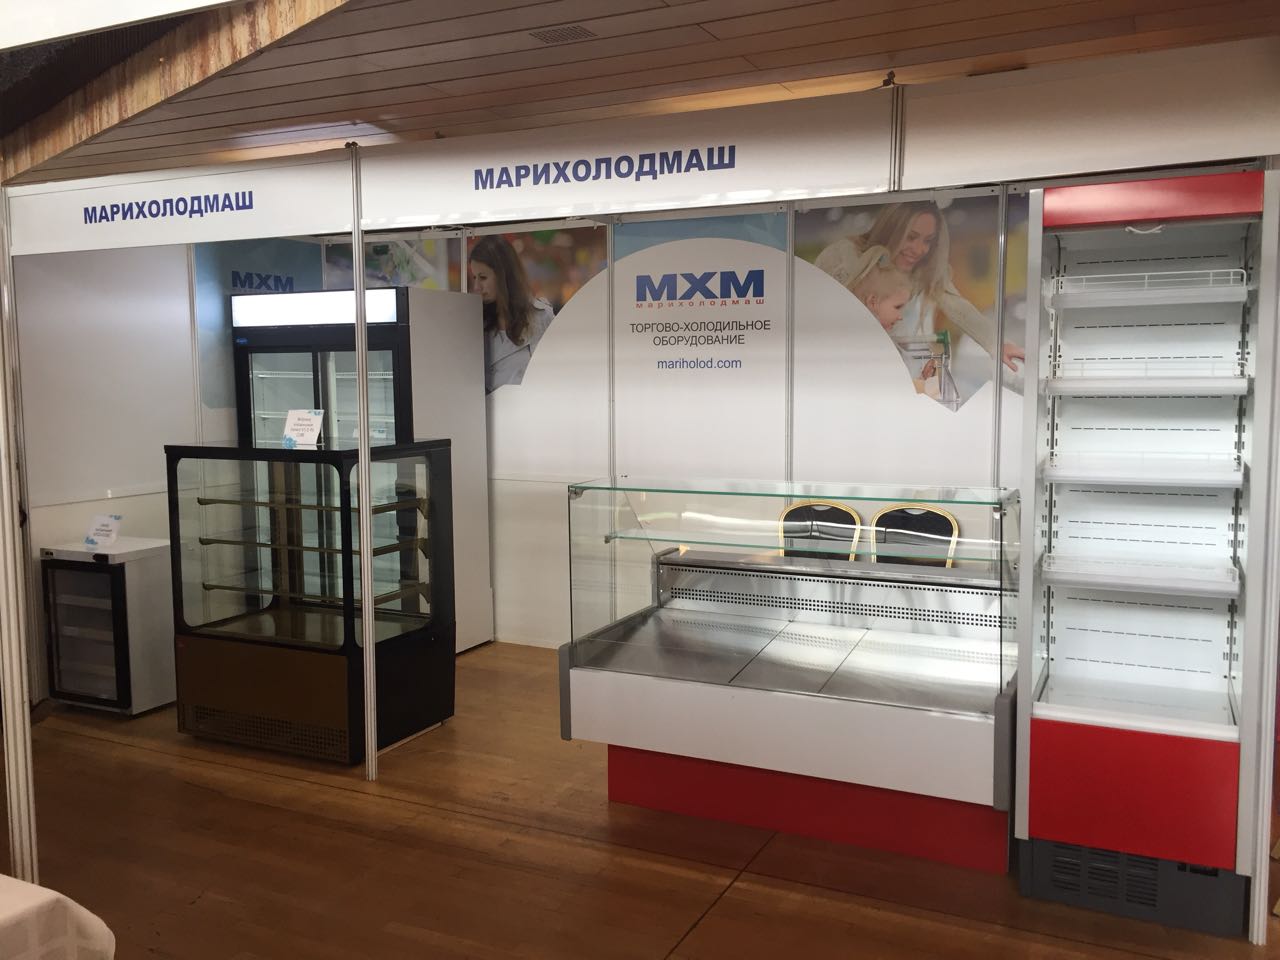 Завод МХМ холодильное оборудование